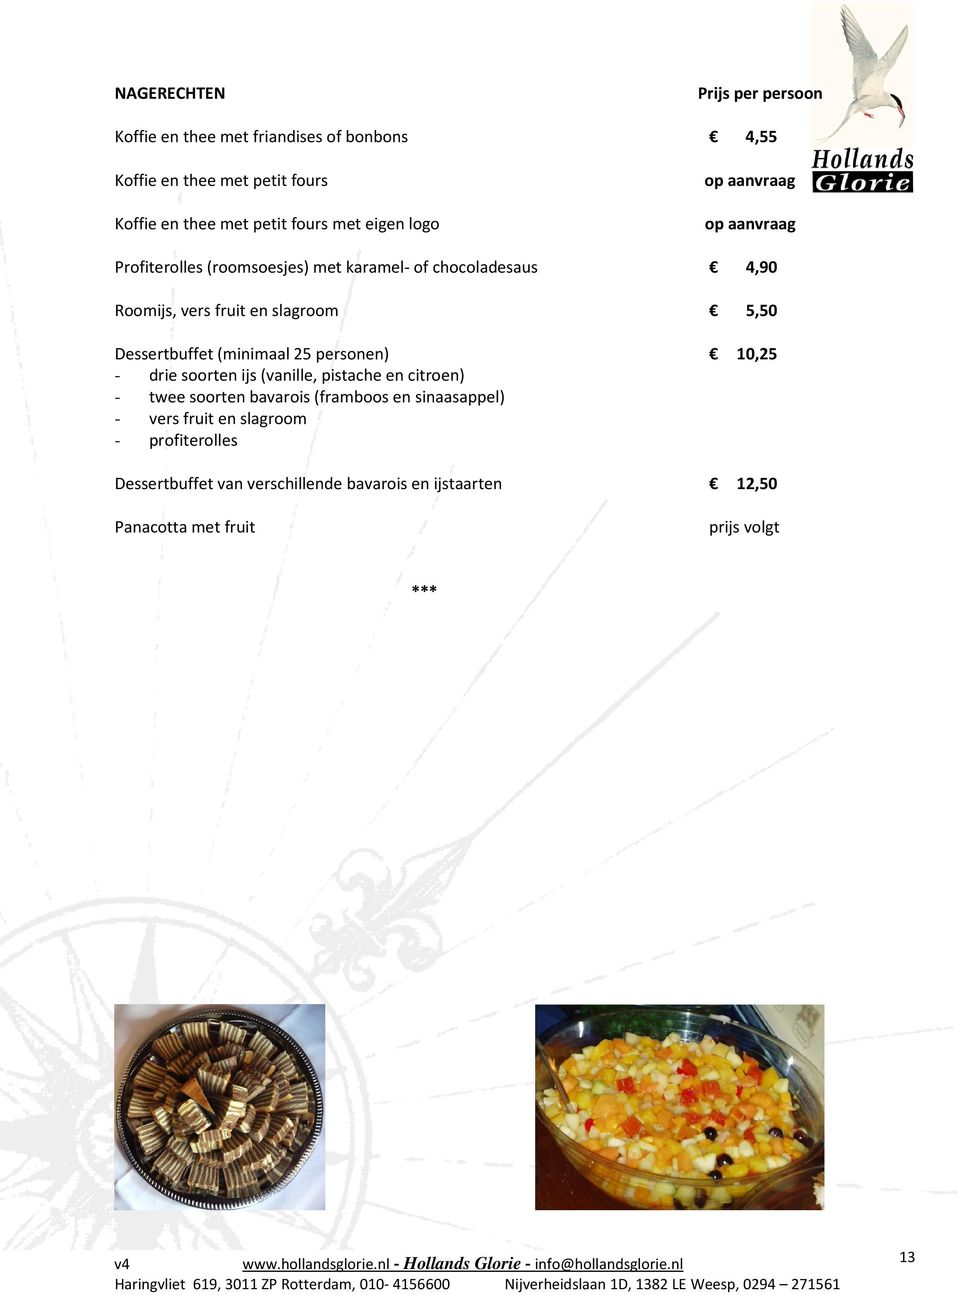 Dessertbuffet (minimaal 25 personen) 10,25 - drie soorten ijs (vanille, pistache en citroen) - twee soorten bavarois (framboos en